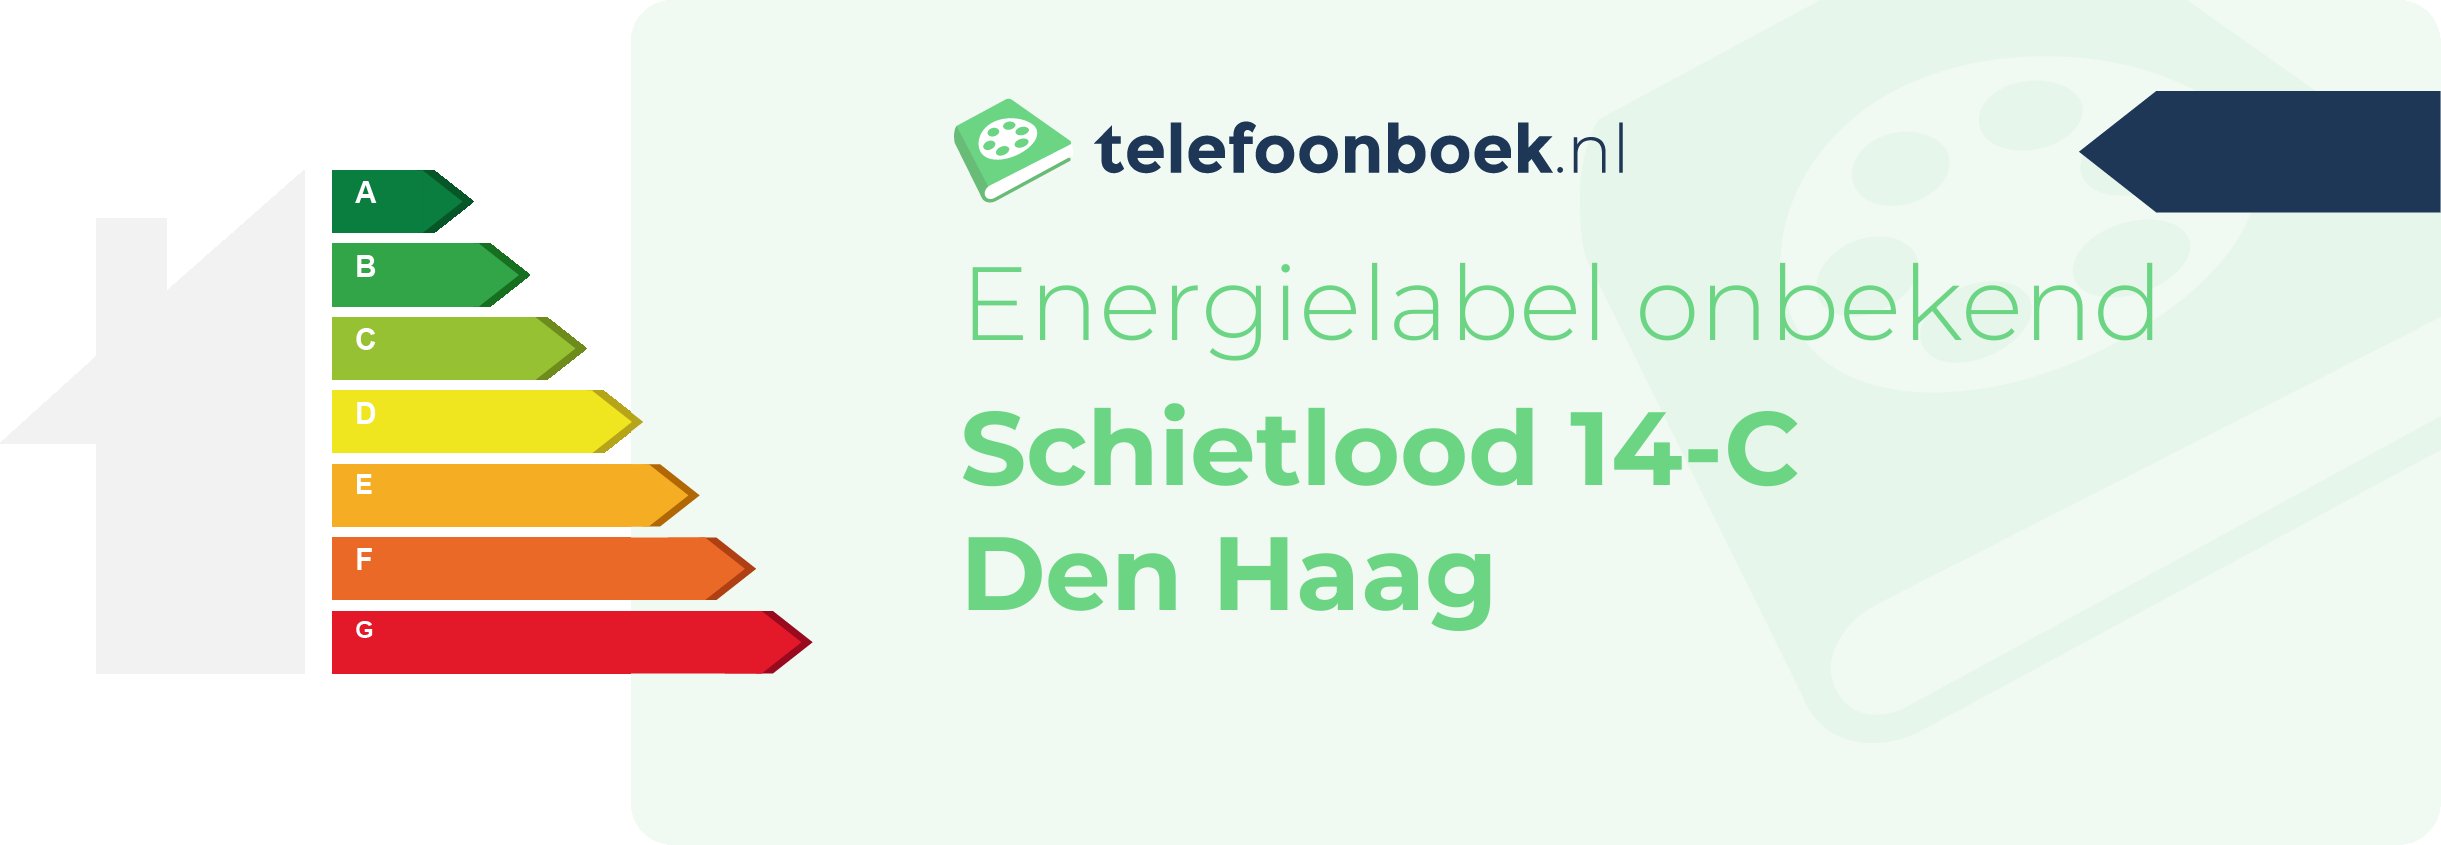 Energielabel Schietlood 14-C Den Haag